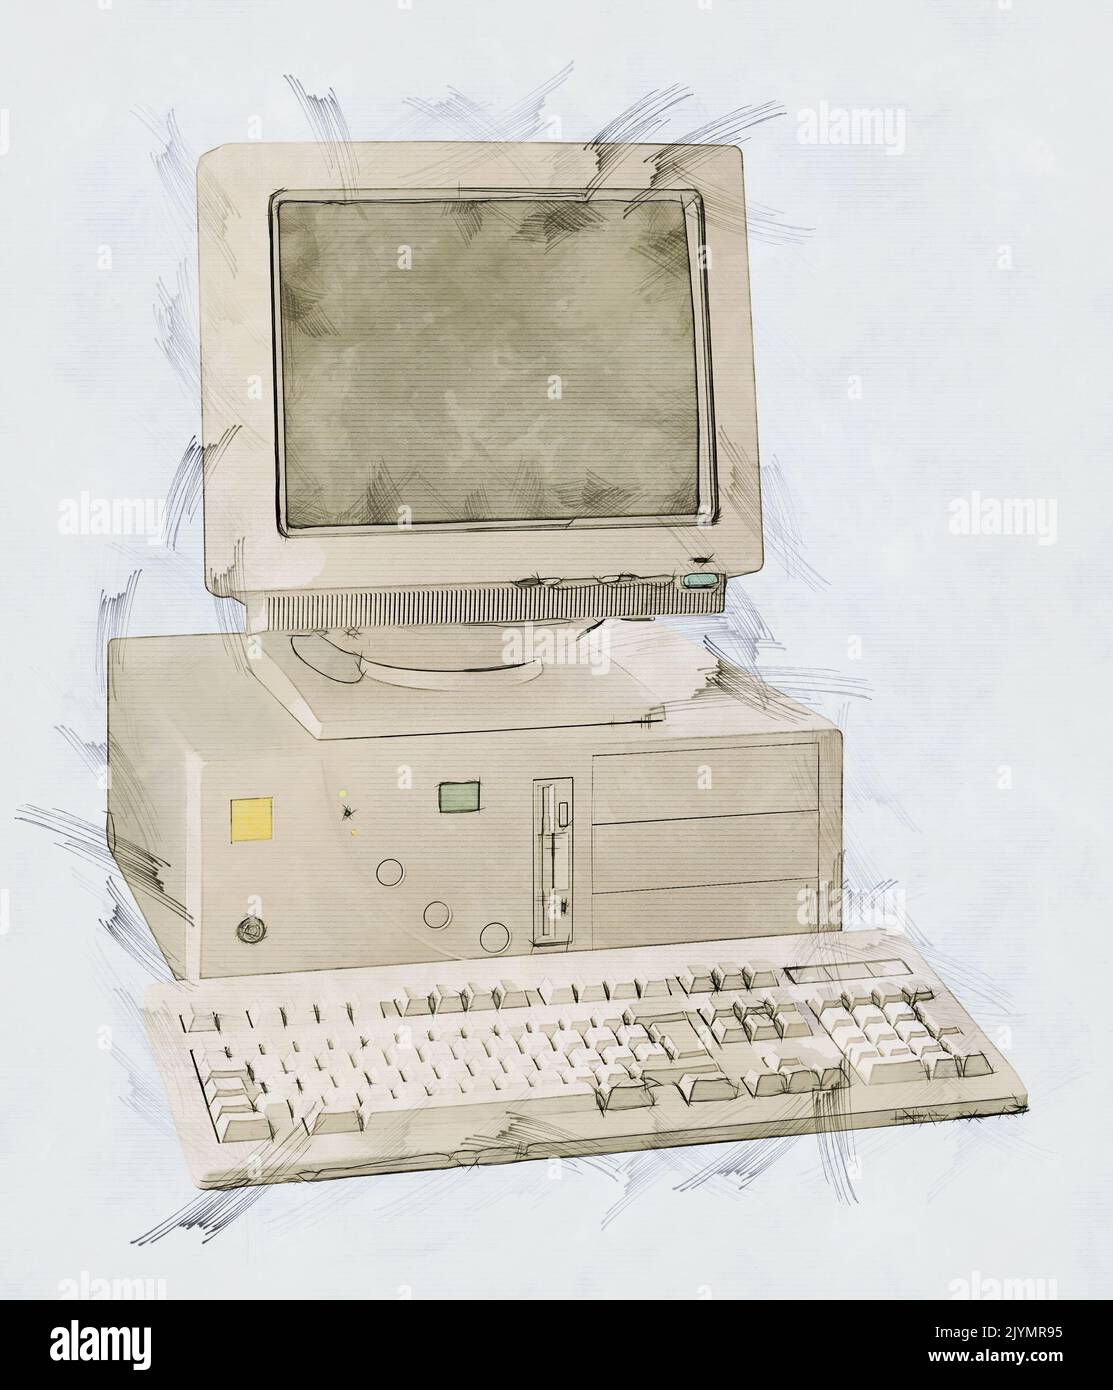 Illustrazione di un PC tower obsoleto degli anni Novanta Foto Stock